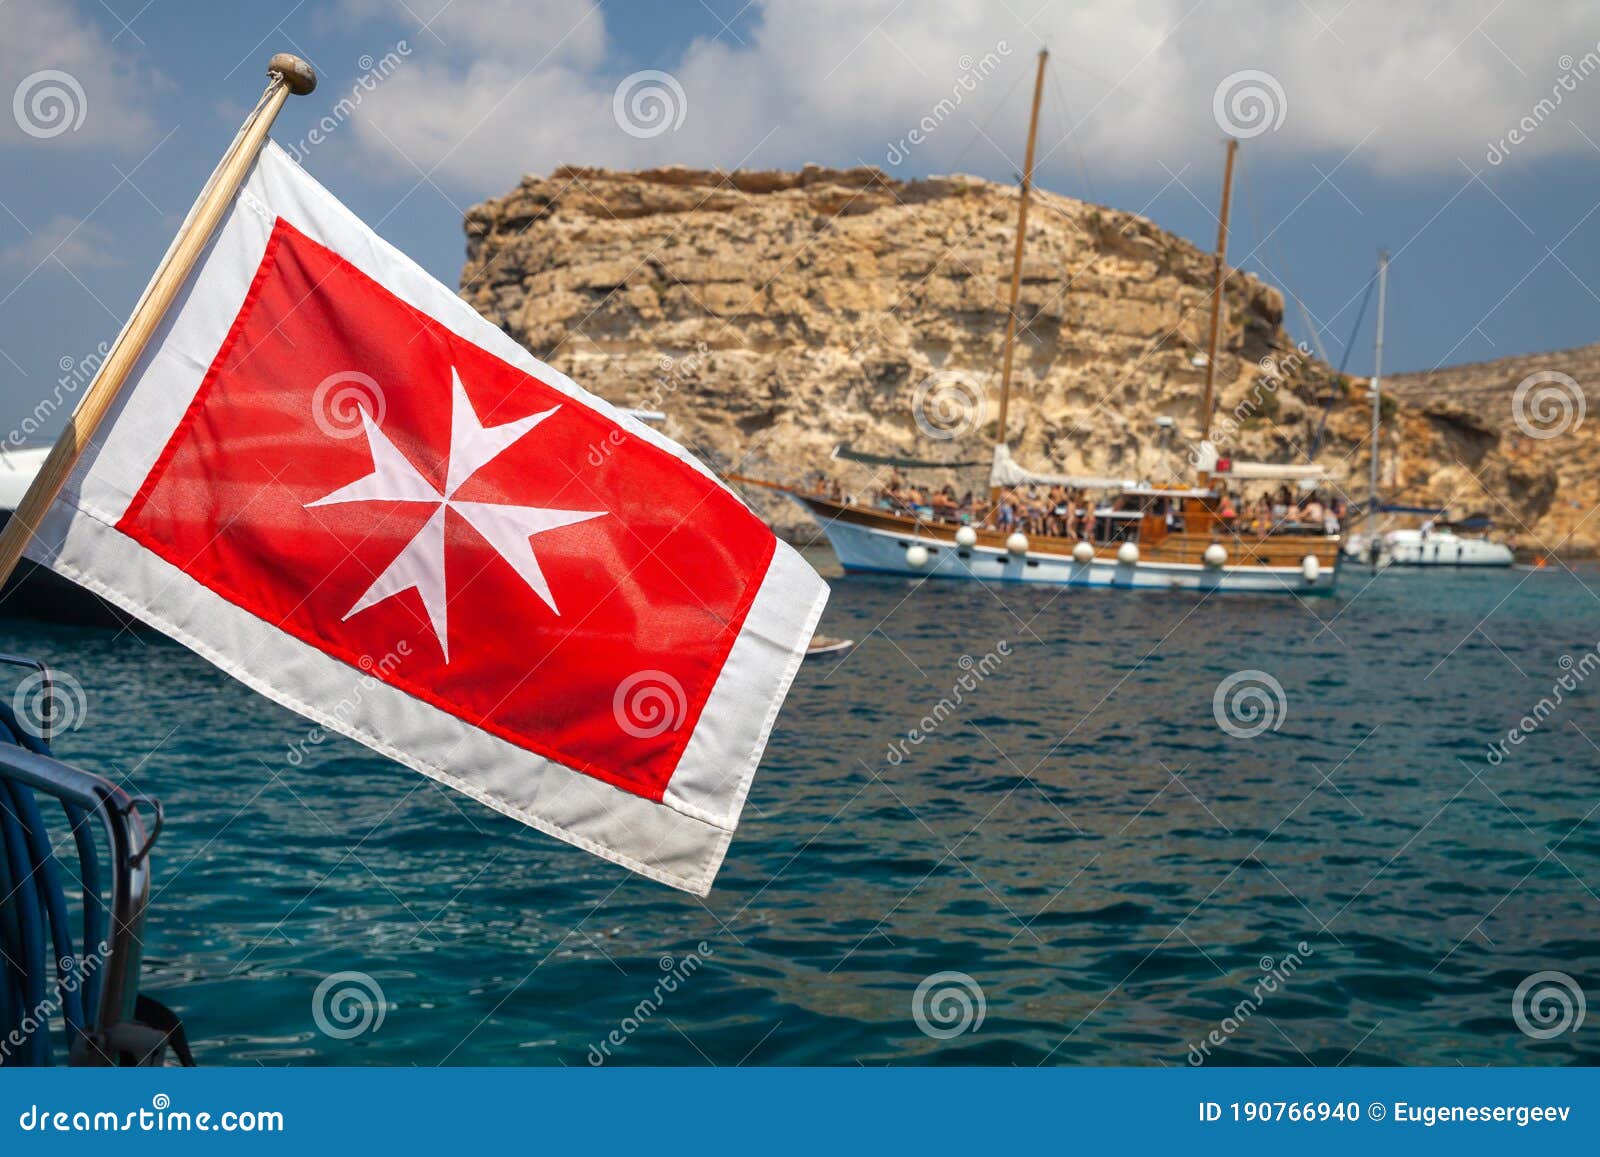 addiction (9ha4571) yacht malta flag